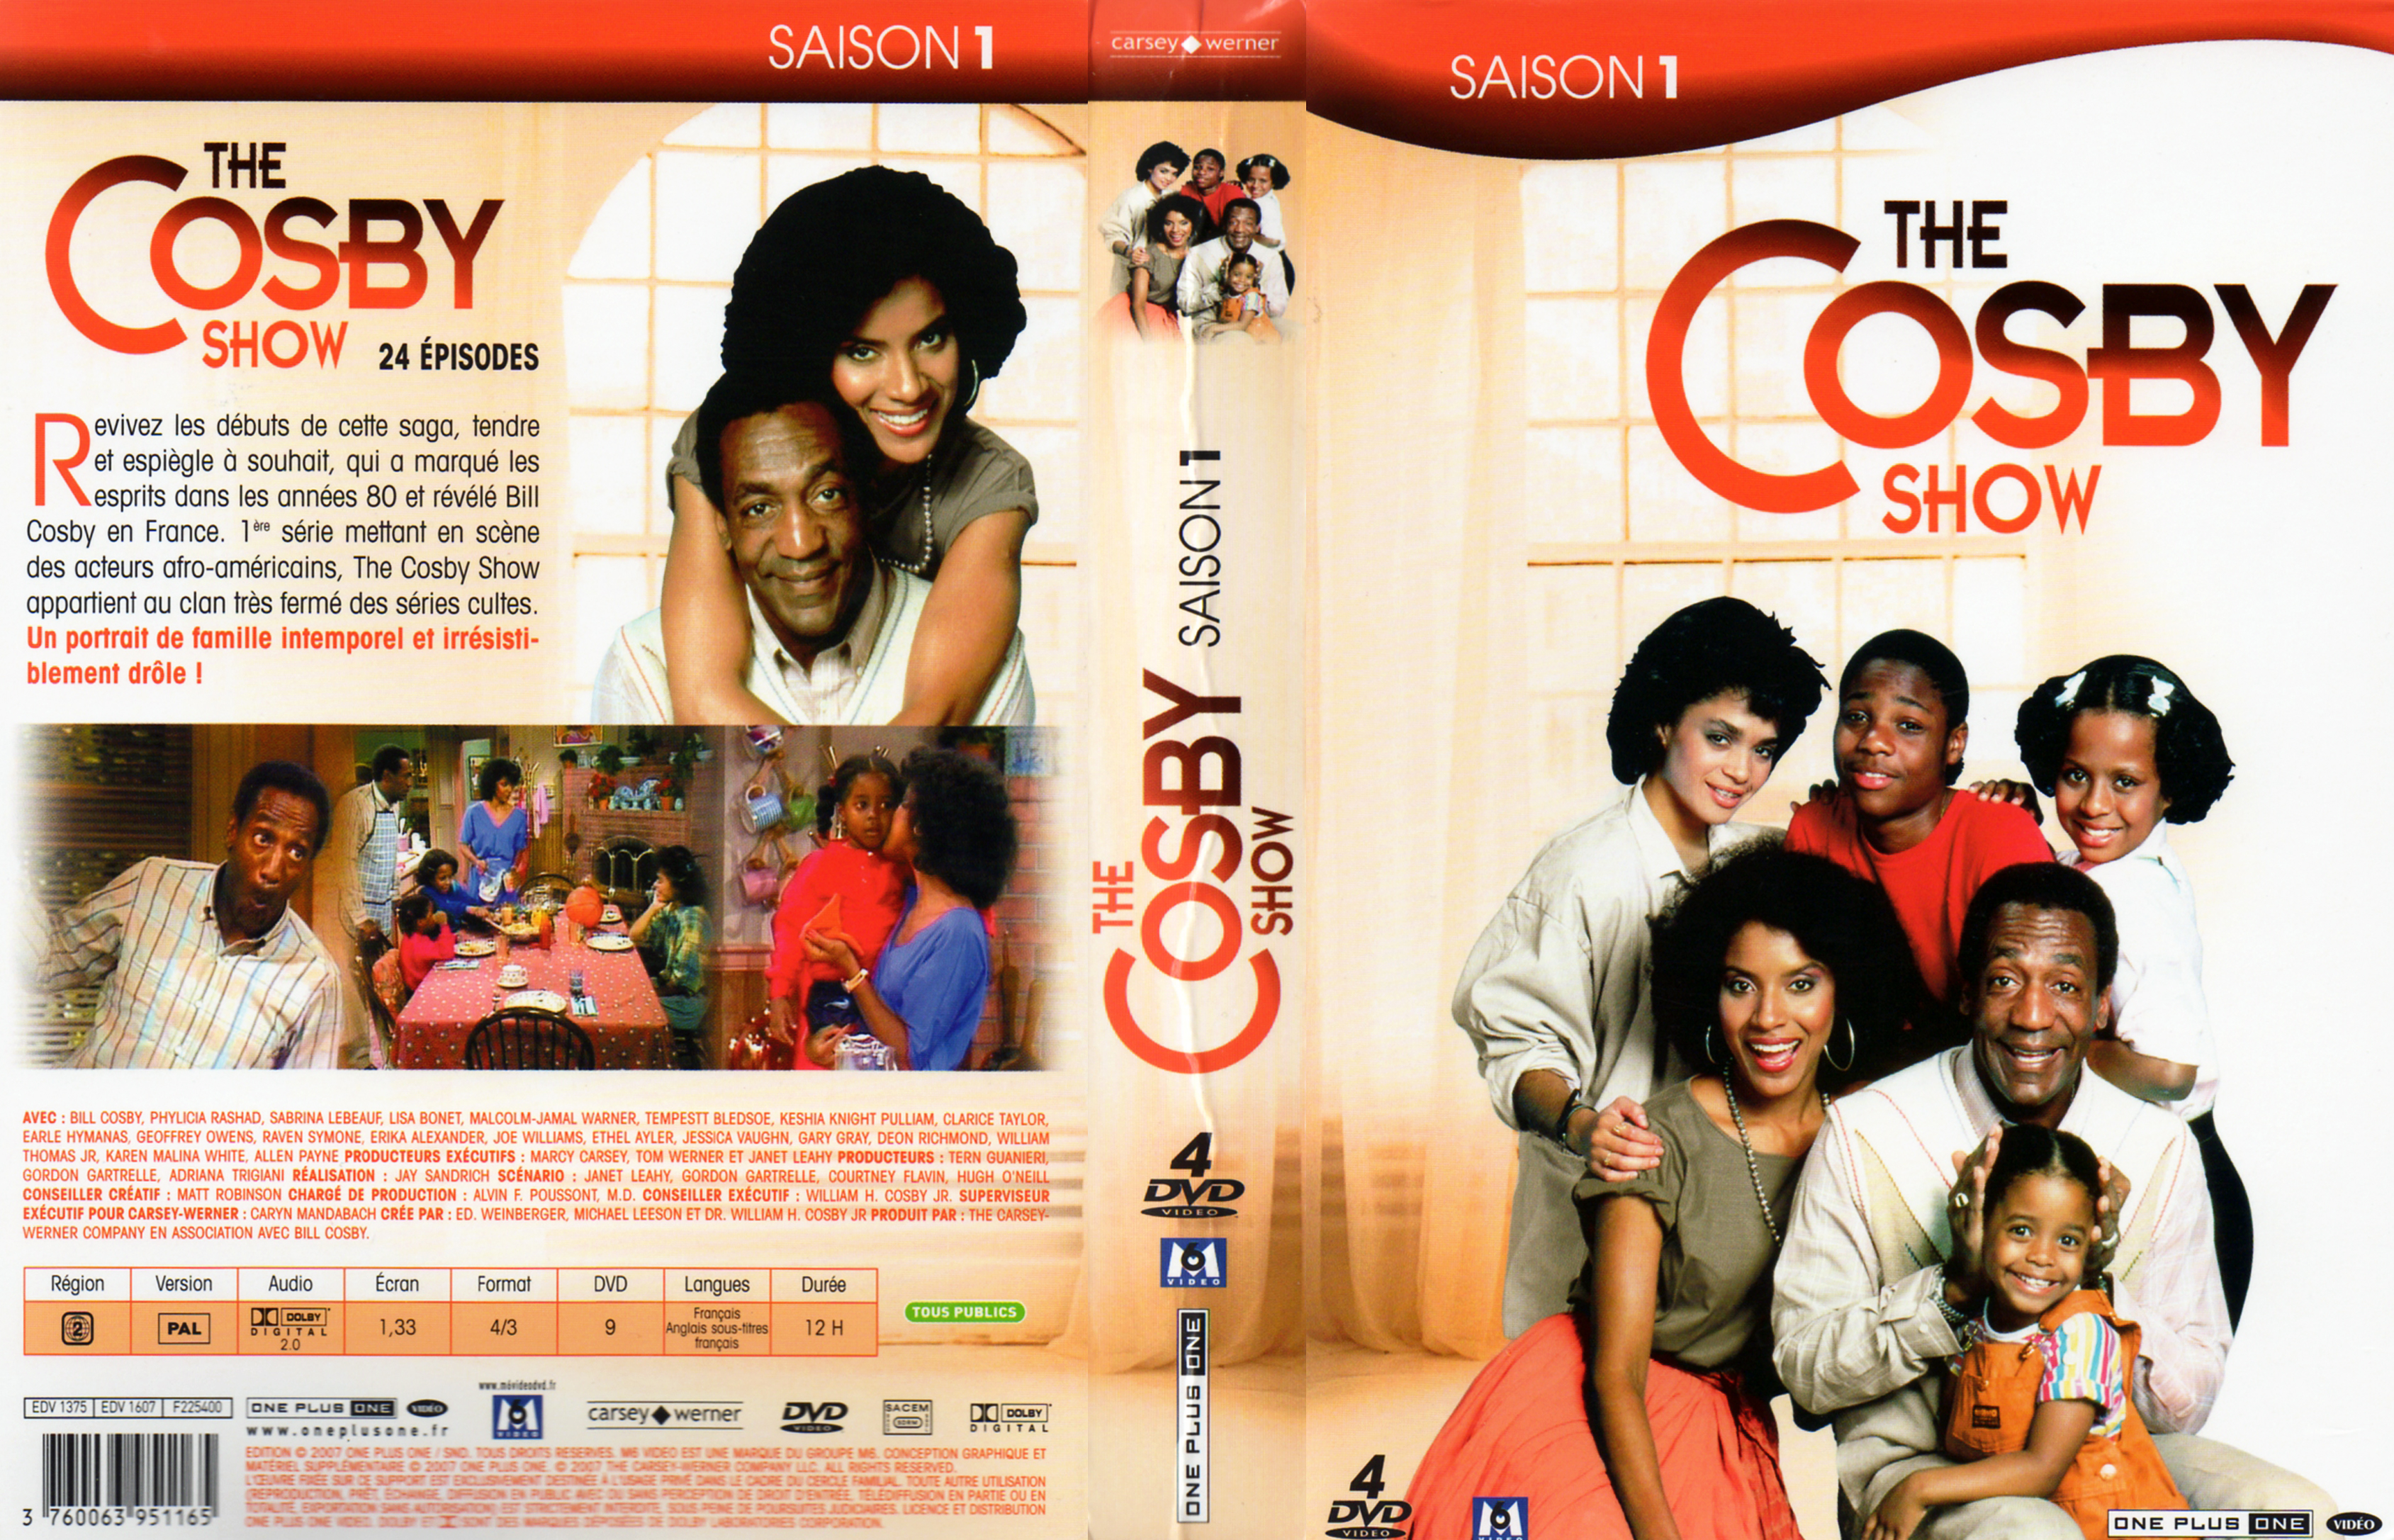 Jaquette DVD The Cosby show Saison 1 COFFRET